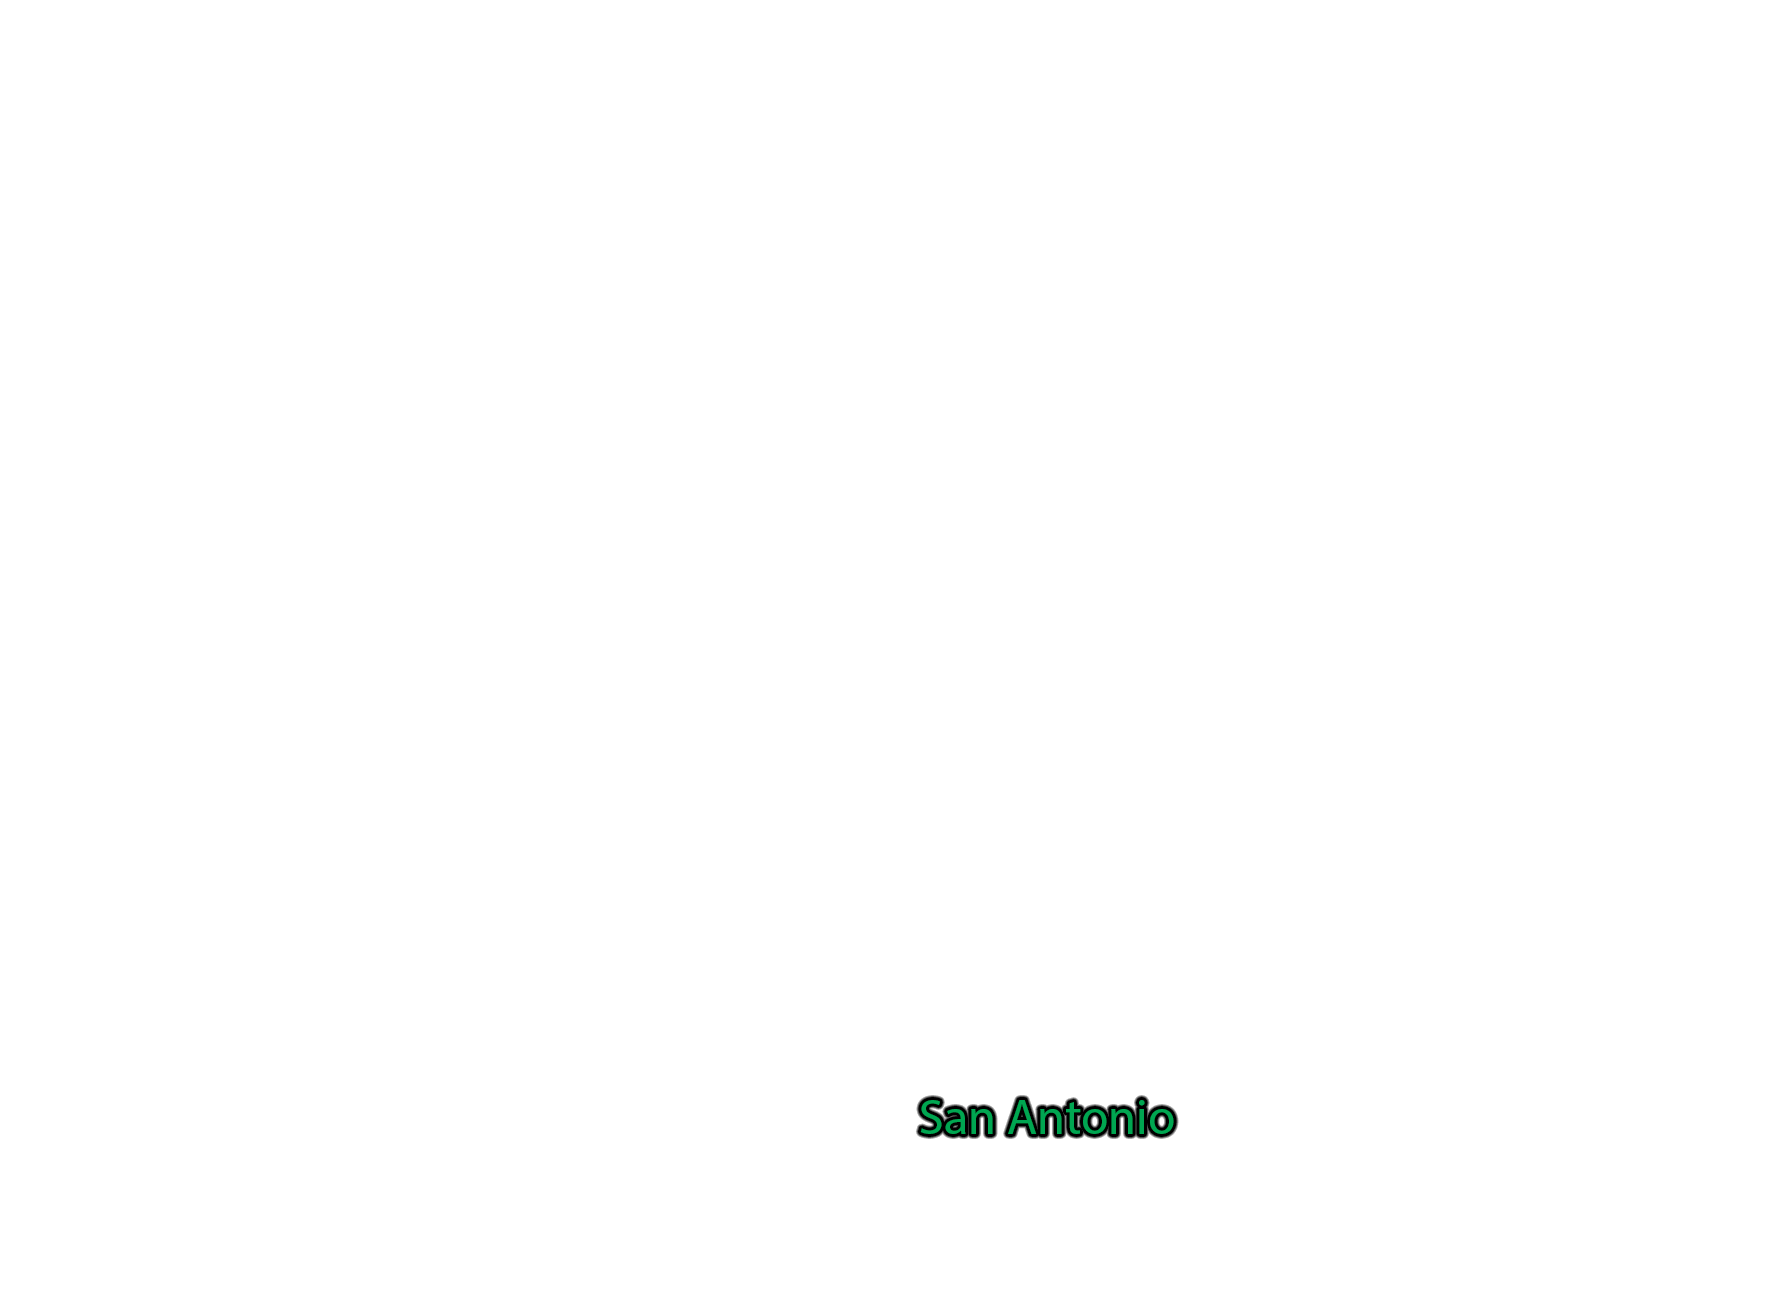 San-Antonio label with glow